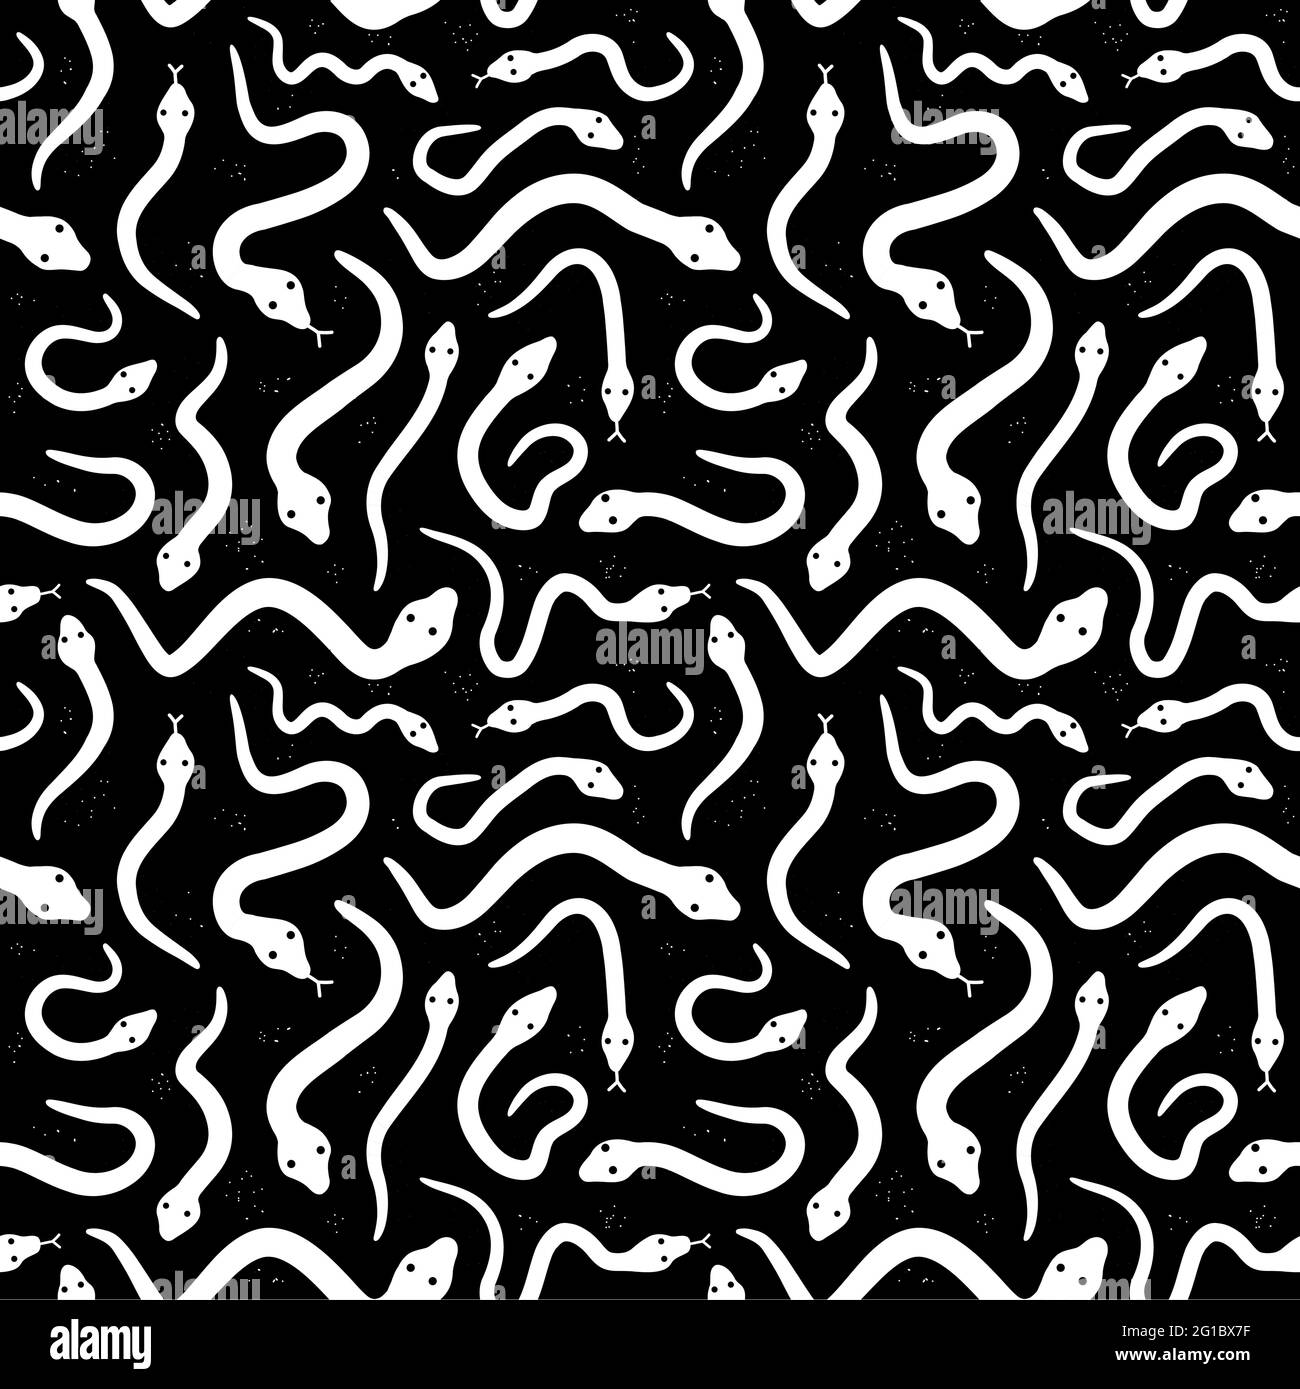 Serpents blancs sur fond noir motif sans couture. Icône d'illustration du style de grunge vectorisé à la main. Différents motifs de serpents monochromes sans couture Illustration de Vecteur